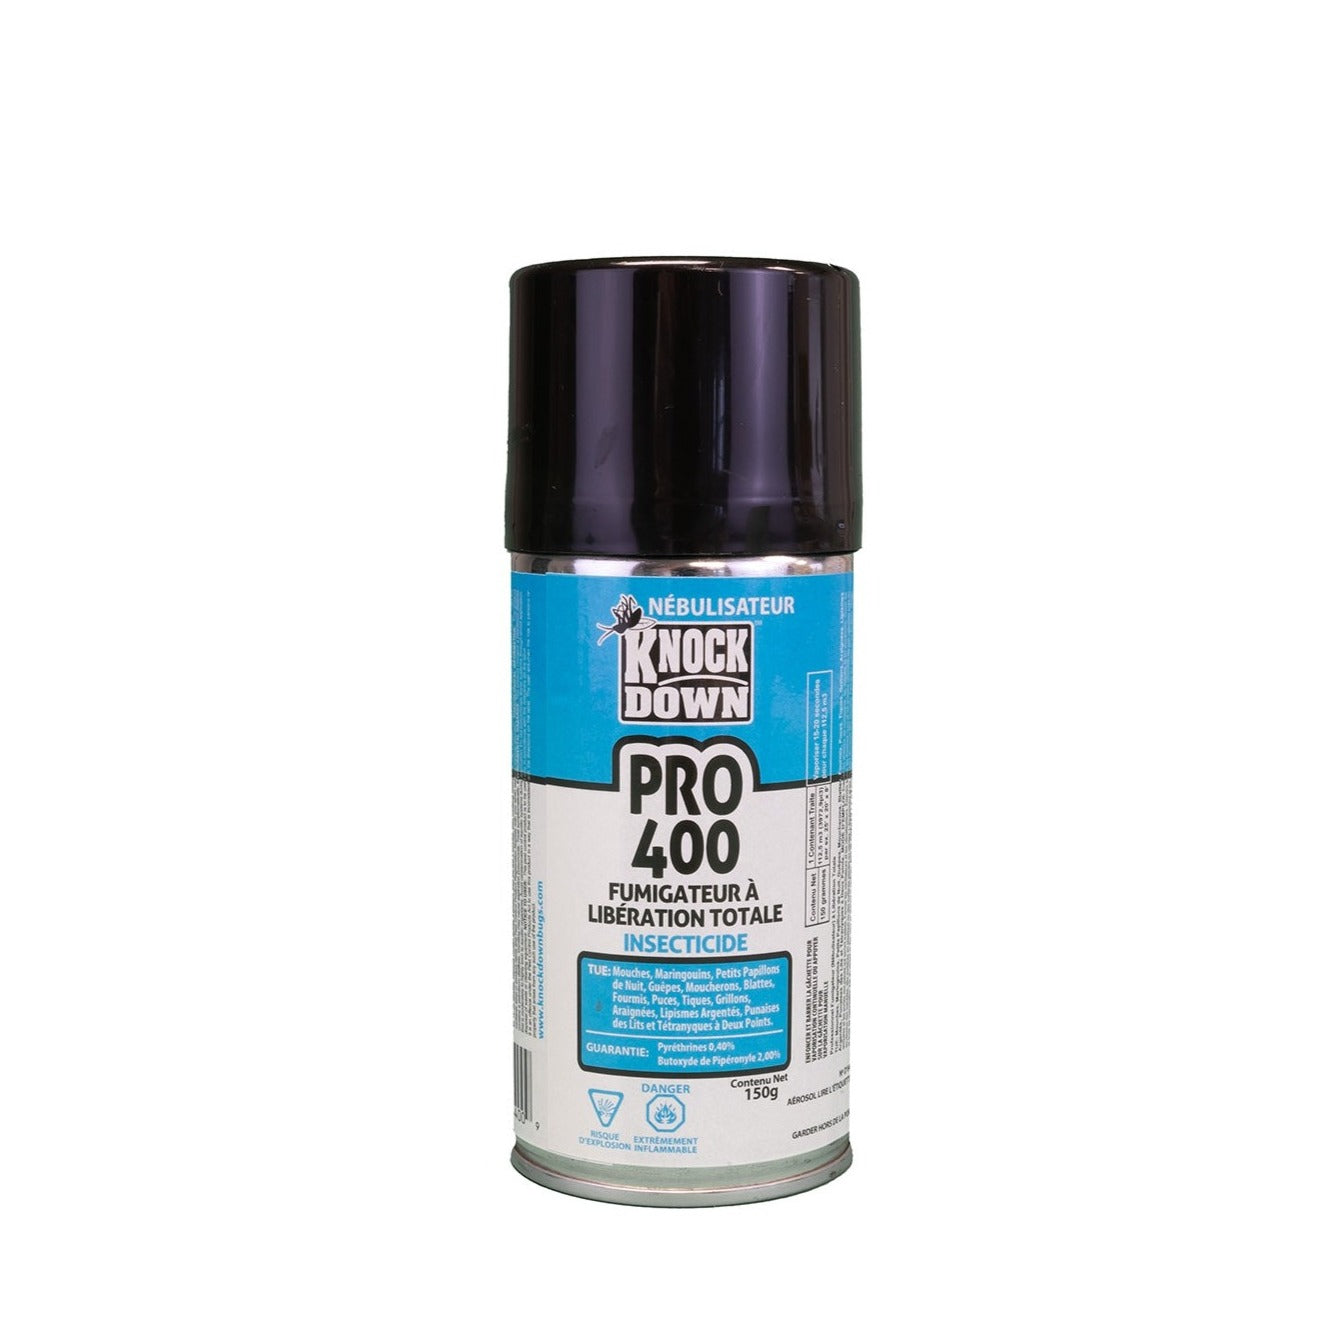 Insecticide fumigateur à libération totale - Pro 400 - Knock Down